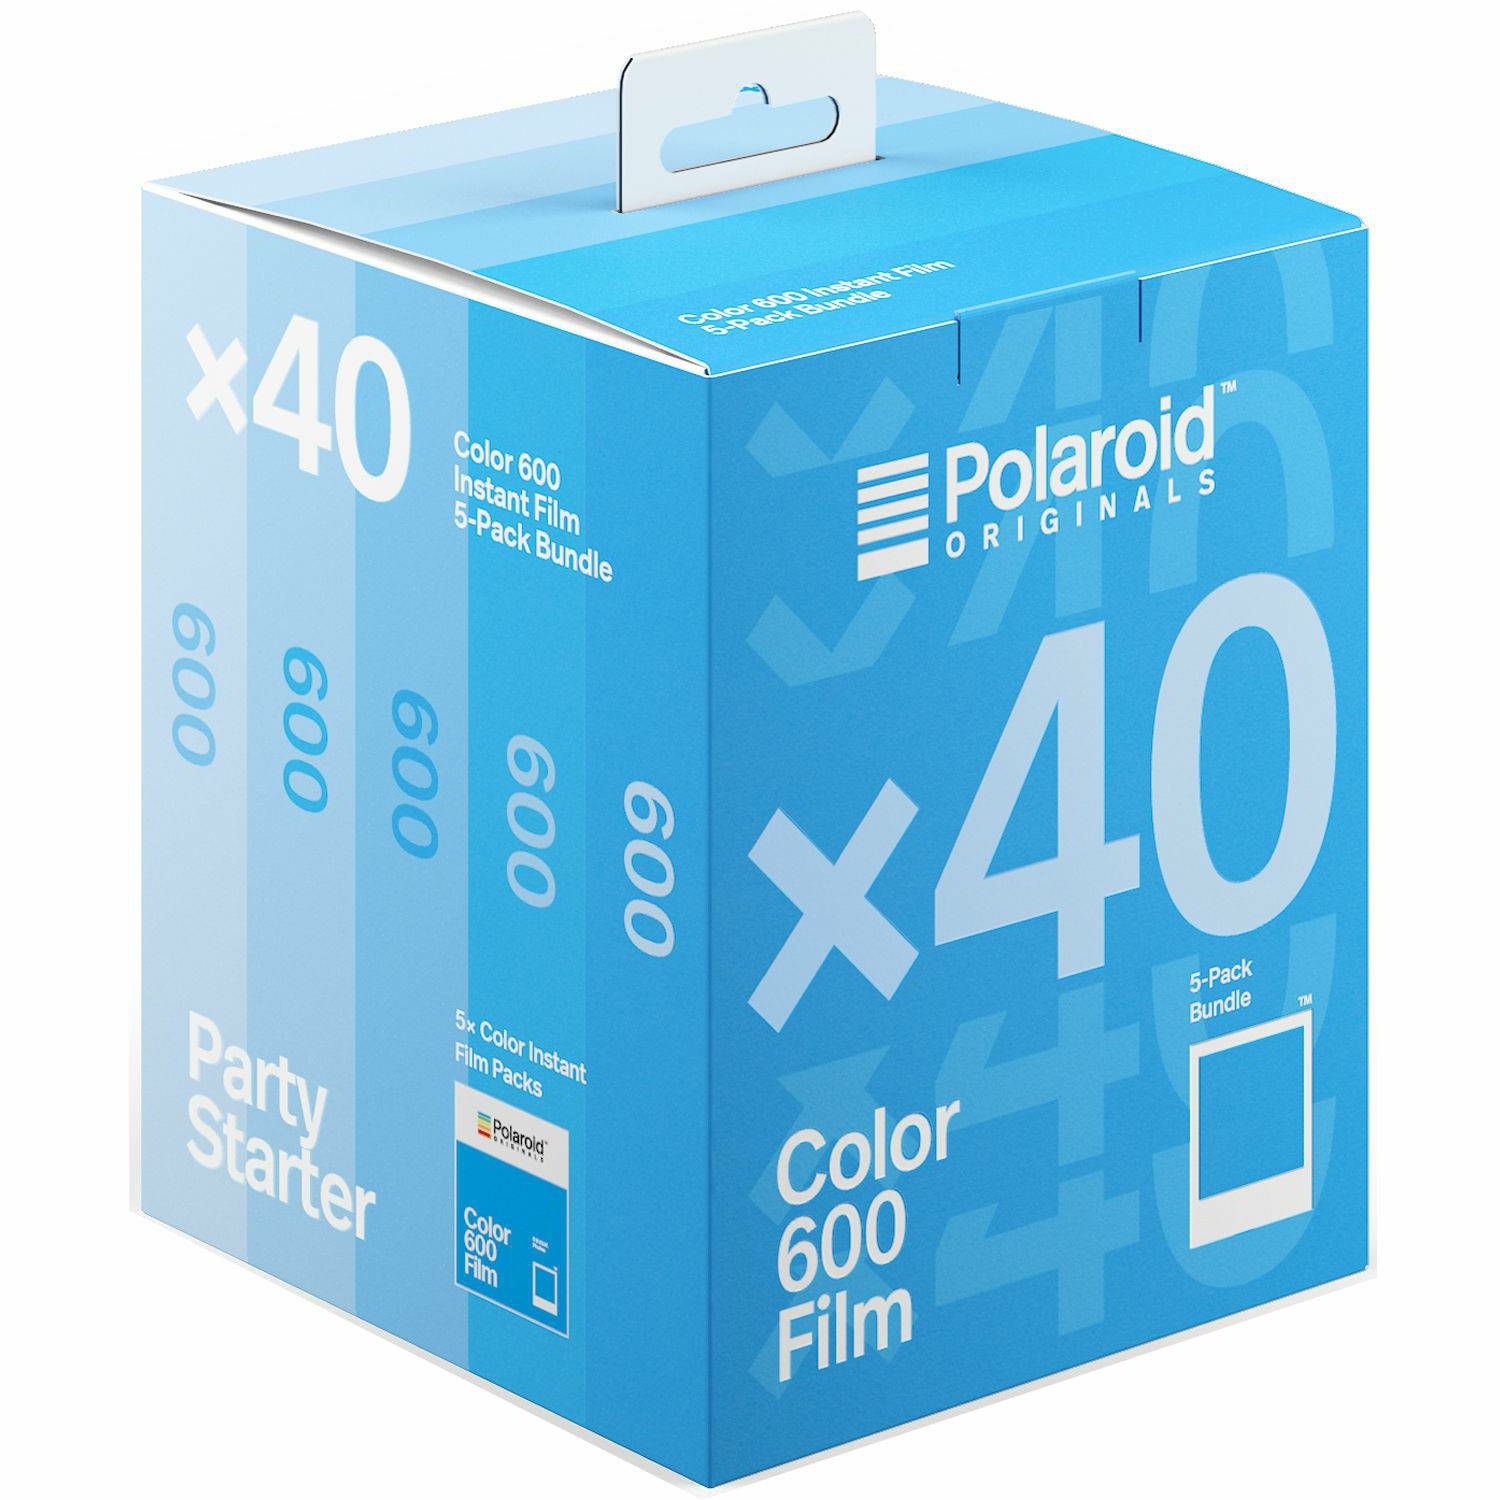 Polaroid Originals Color film for 600 x40 film pack foto papir za fotografije u boji za Instant fotoaparate (004964)